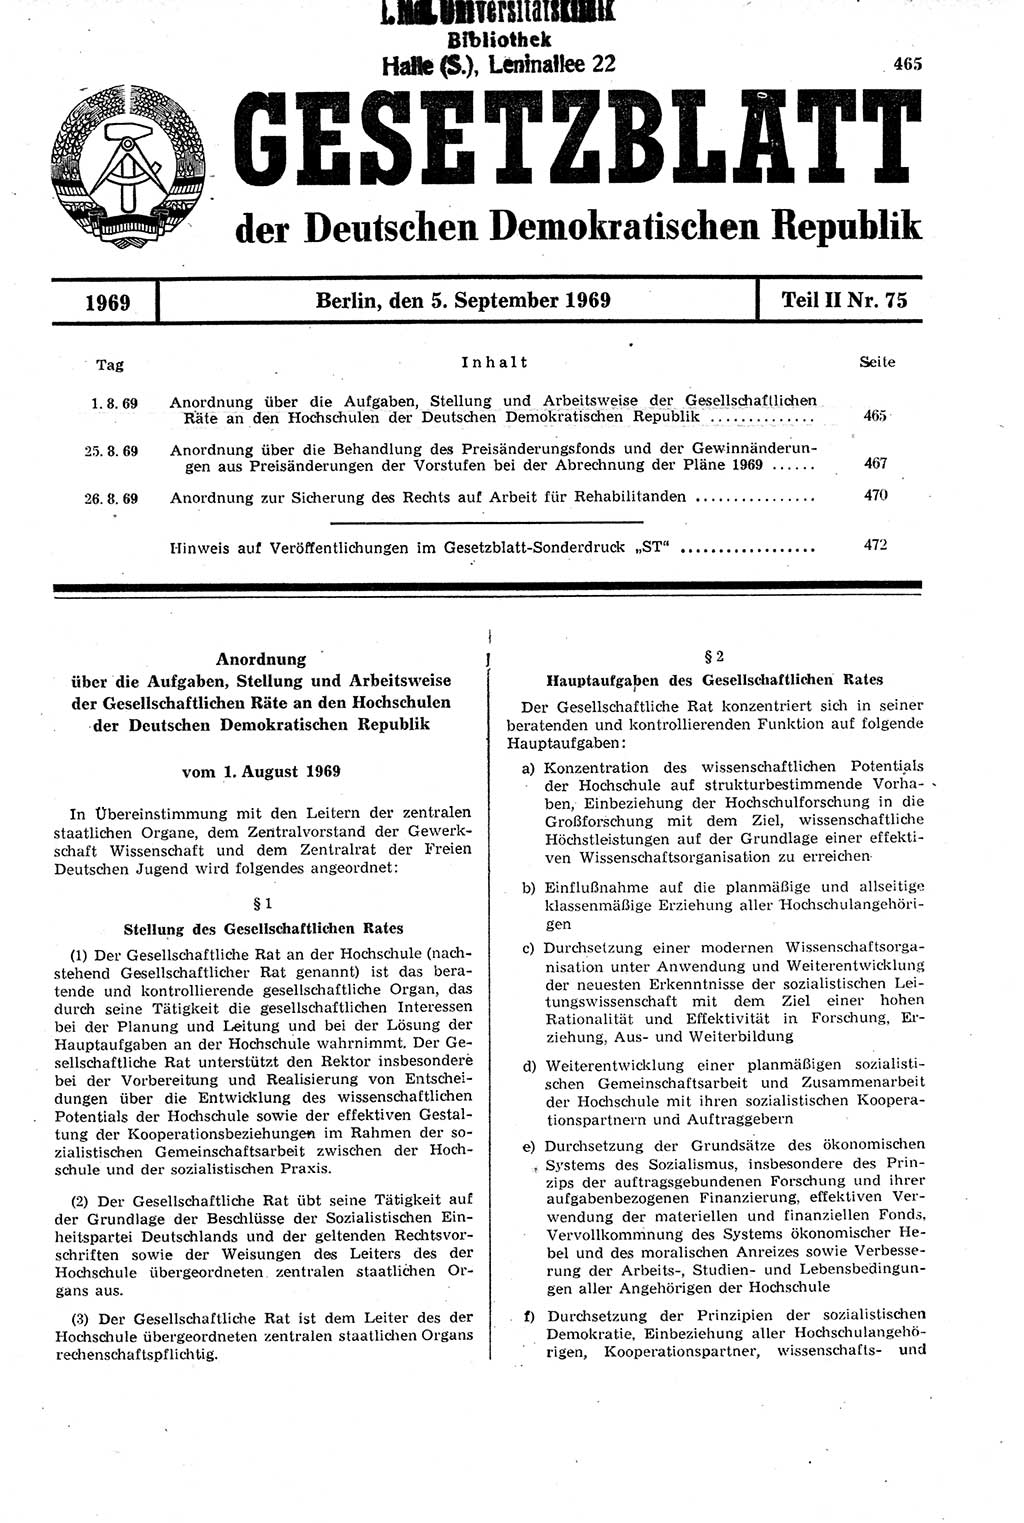 Gesetzblatt (GBl.) der Deutschen Demokratischen Republik (DDR) Teil ⅠⅠ 1969, Seite 465 (GBl. DDR ⅠⅠ 1969, S. 465)